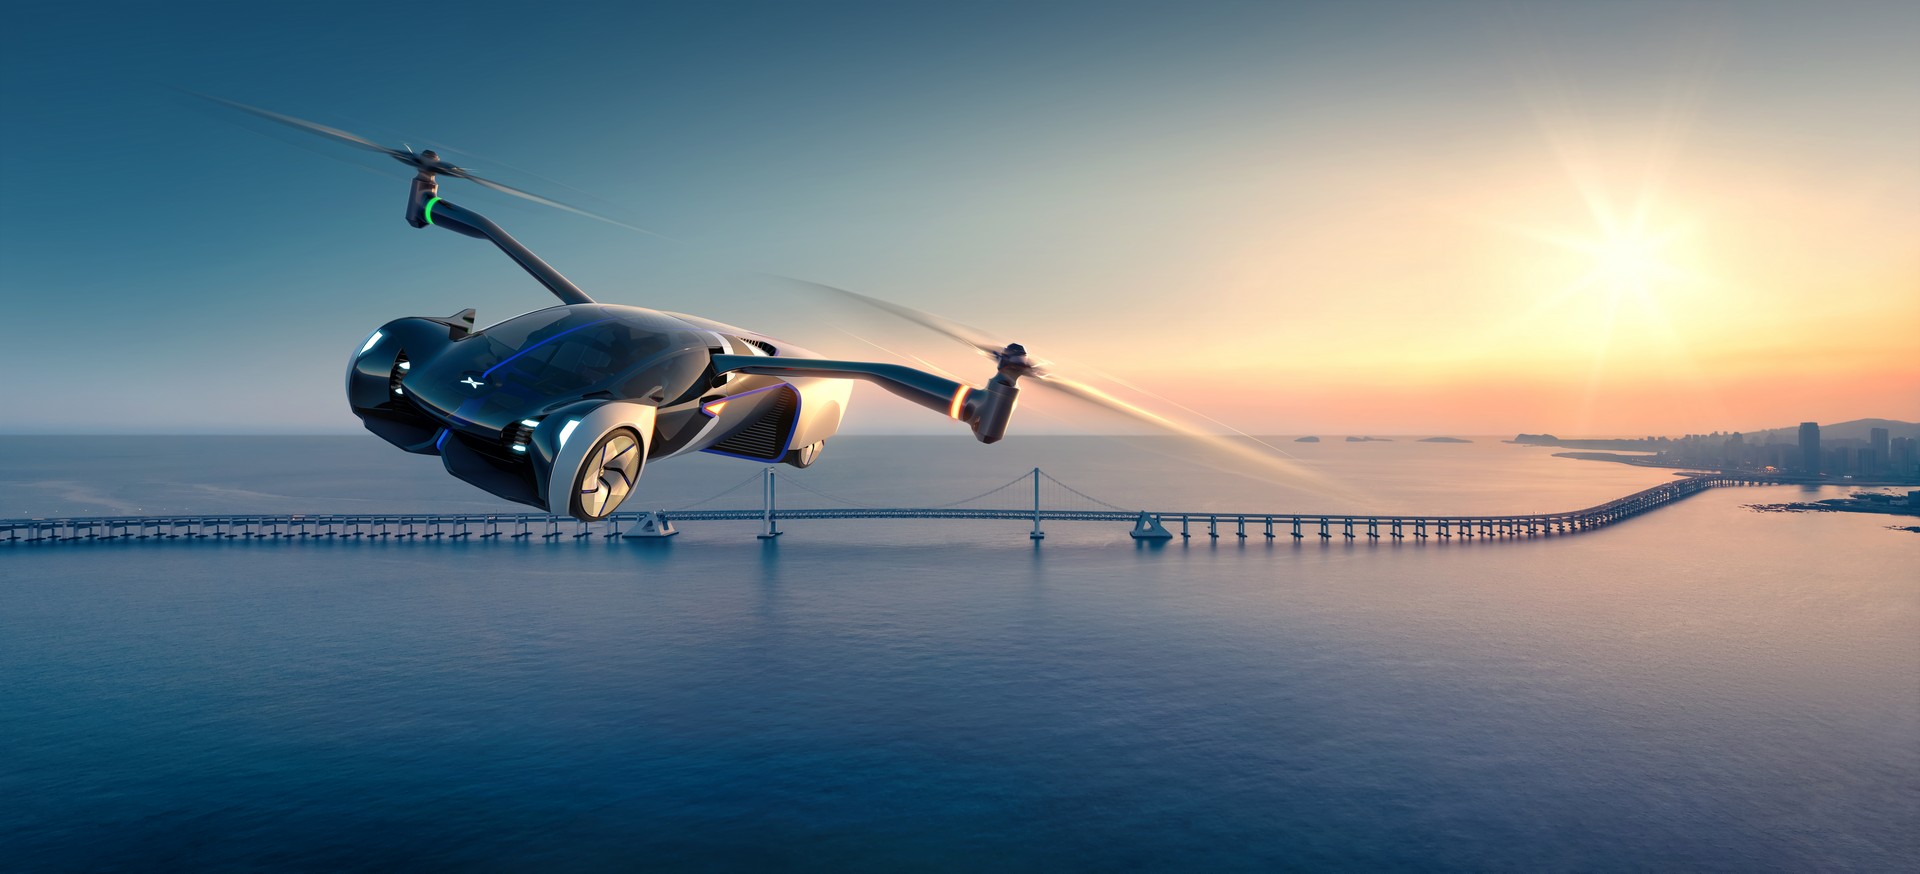 Через три года в серию: китайская компания показала инновационный летающий автомобиль